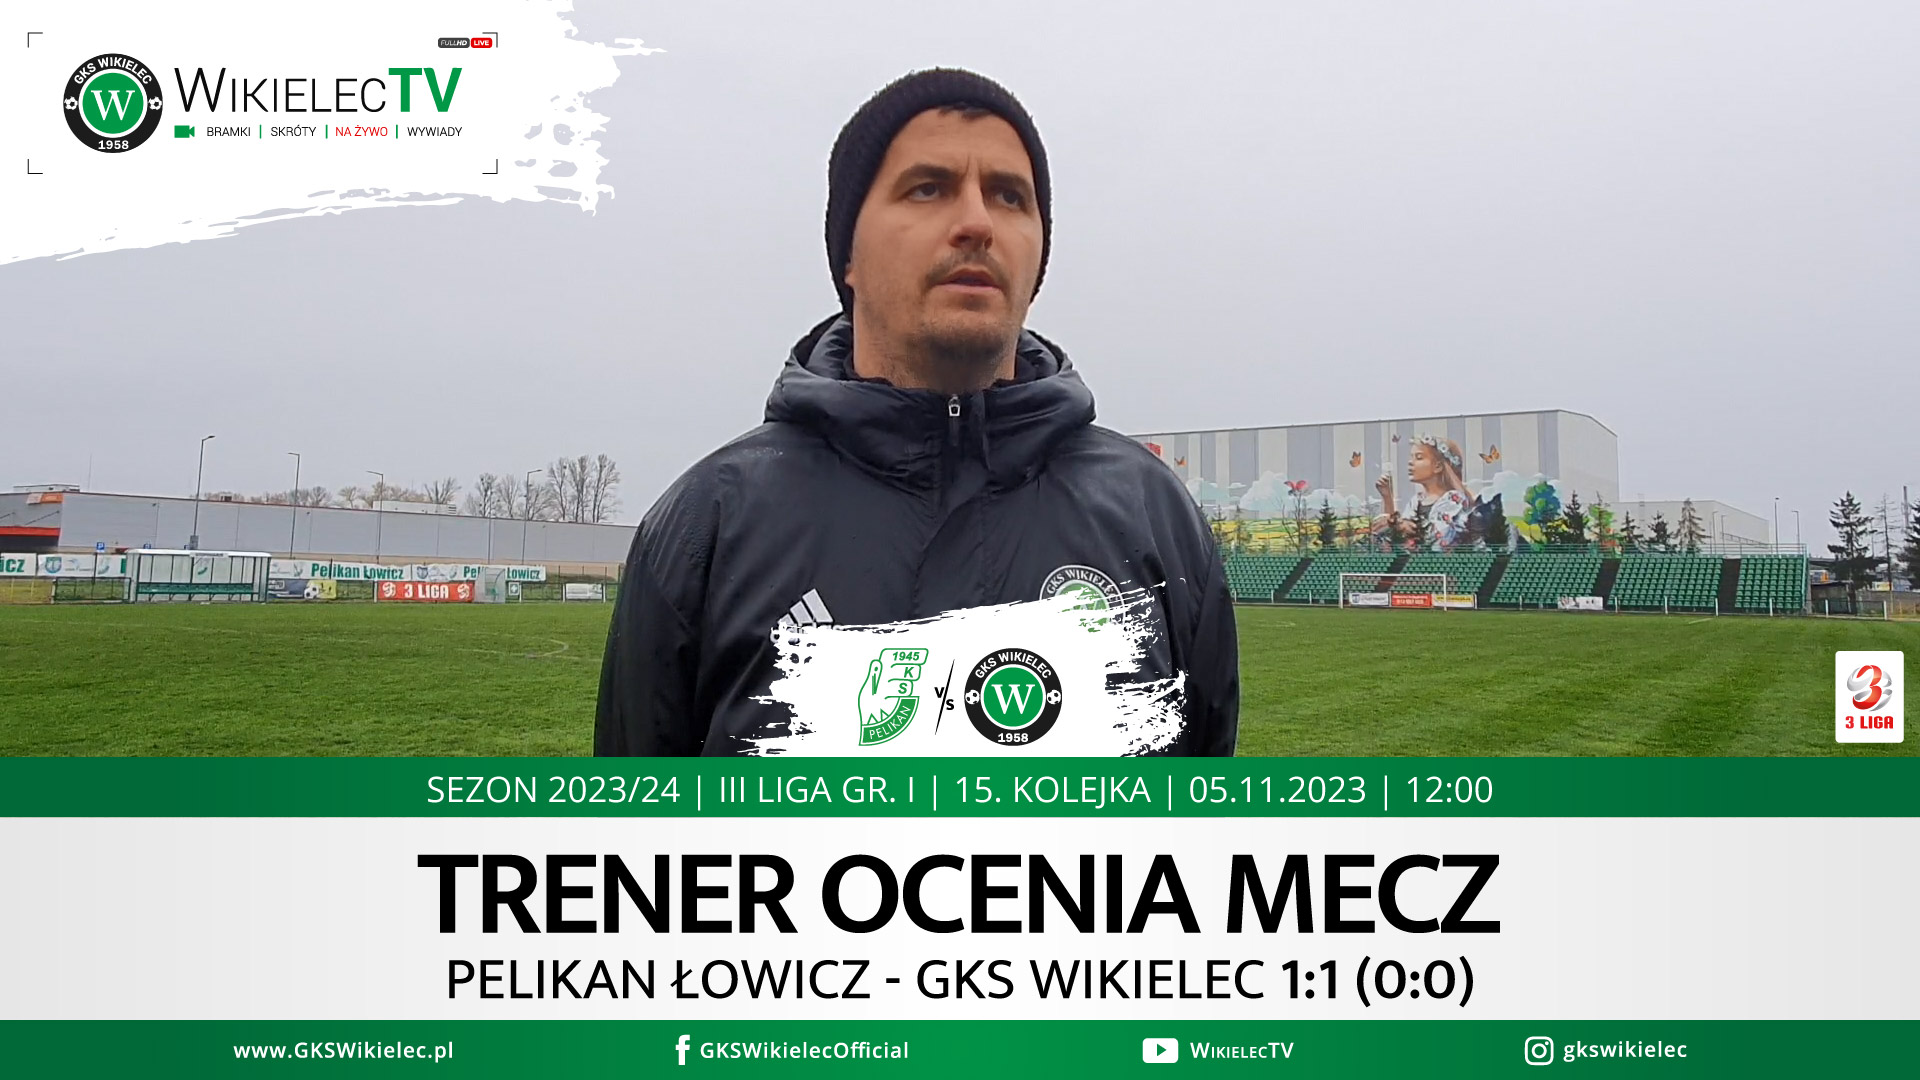 WikielecTV: Trener Damian Jarzembowski ocenia mecz z Pelikanem Łowicz